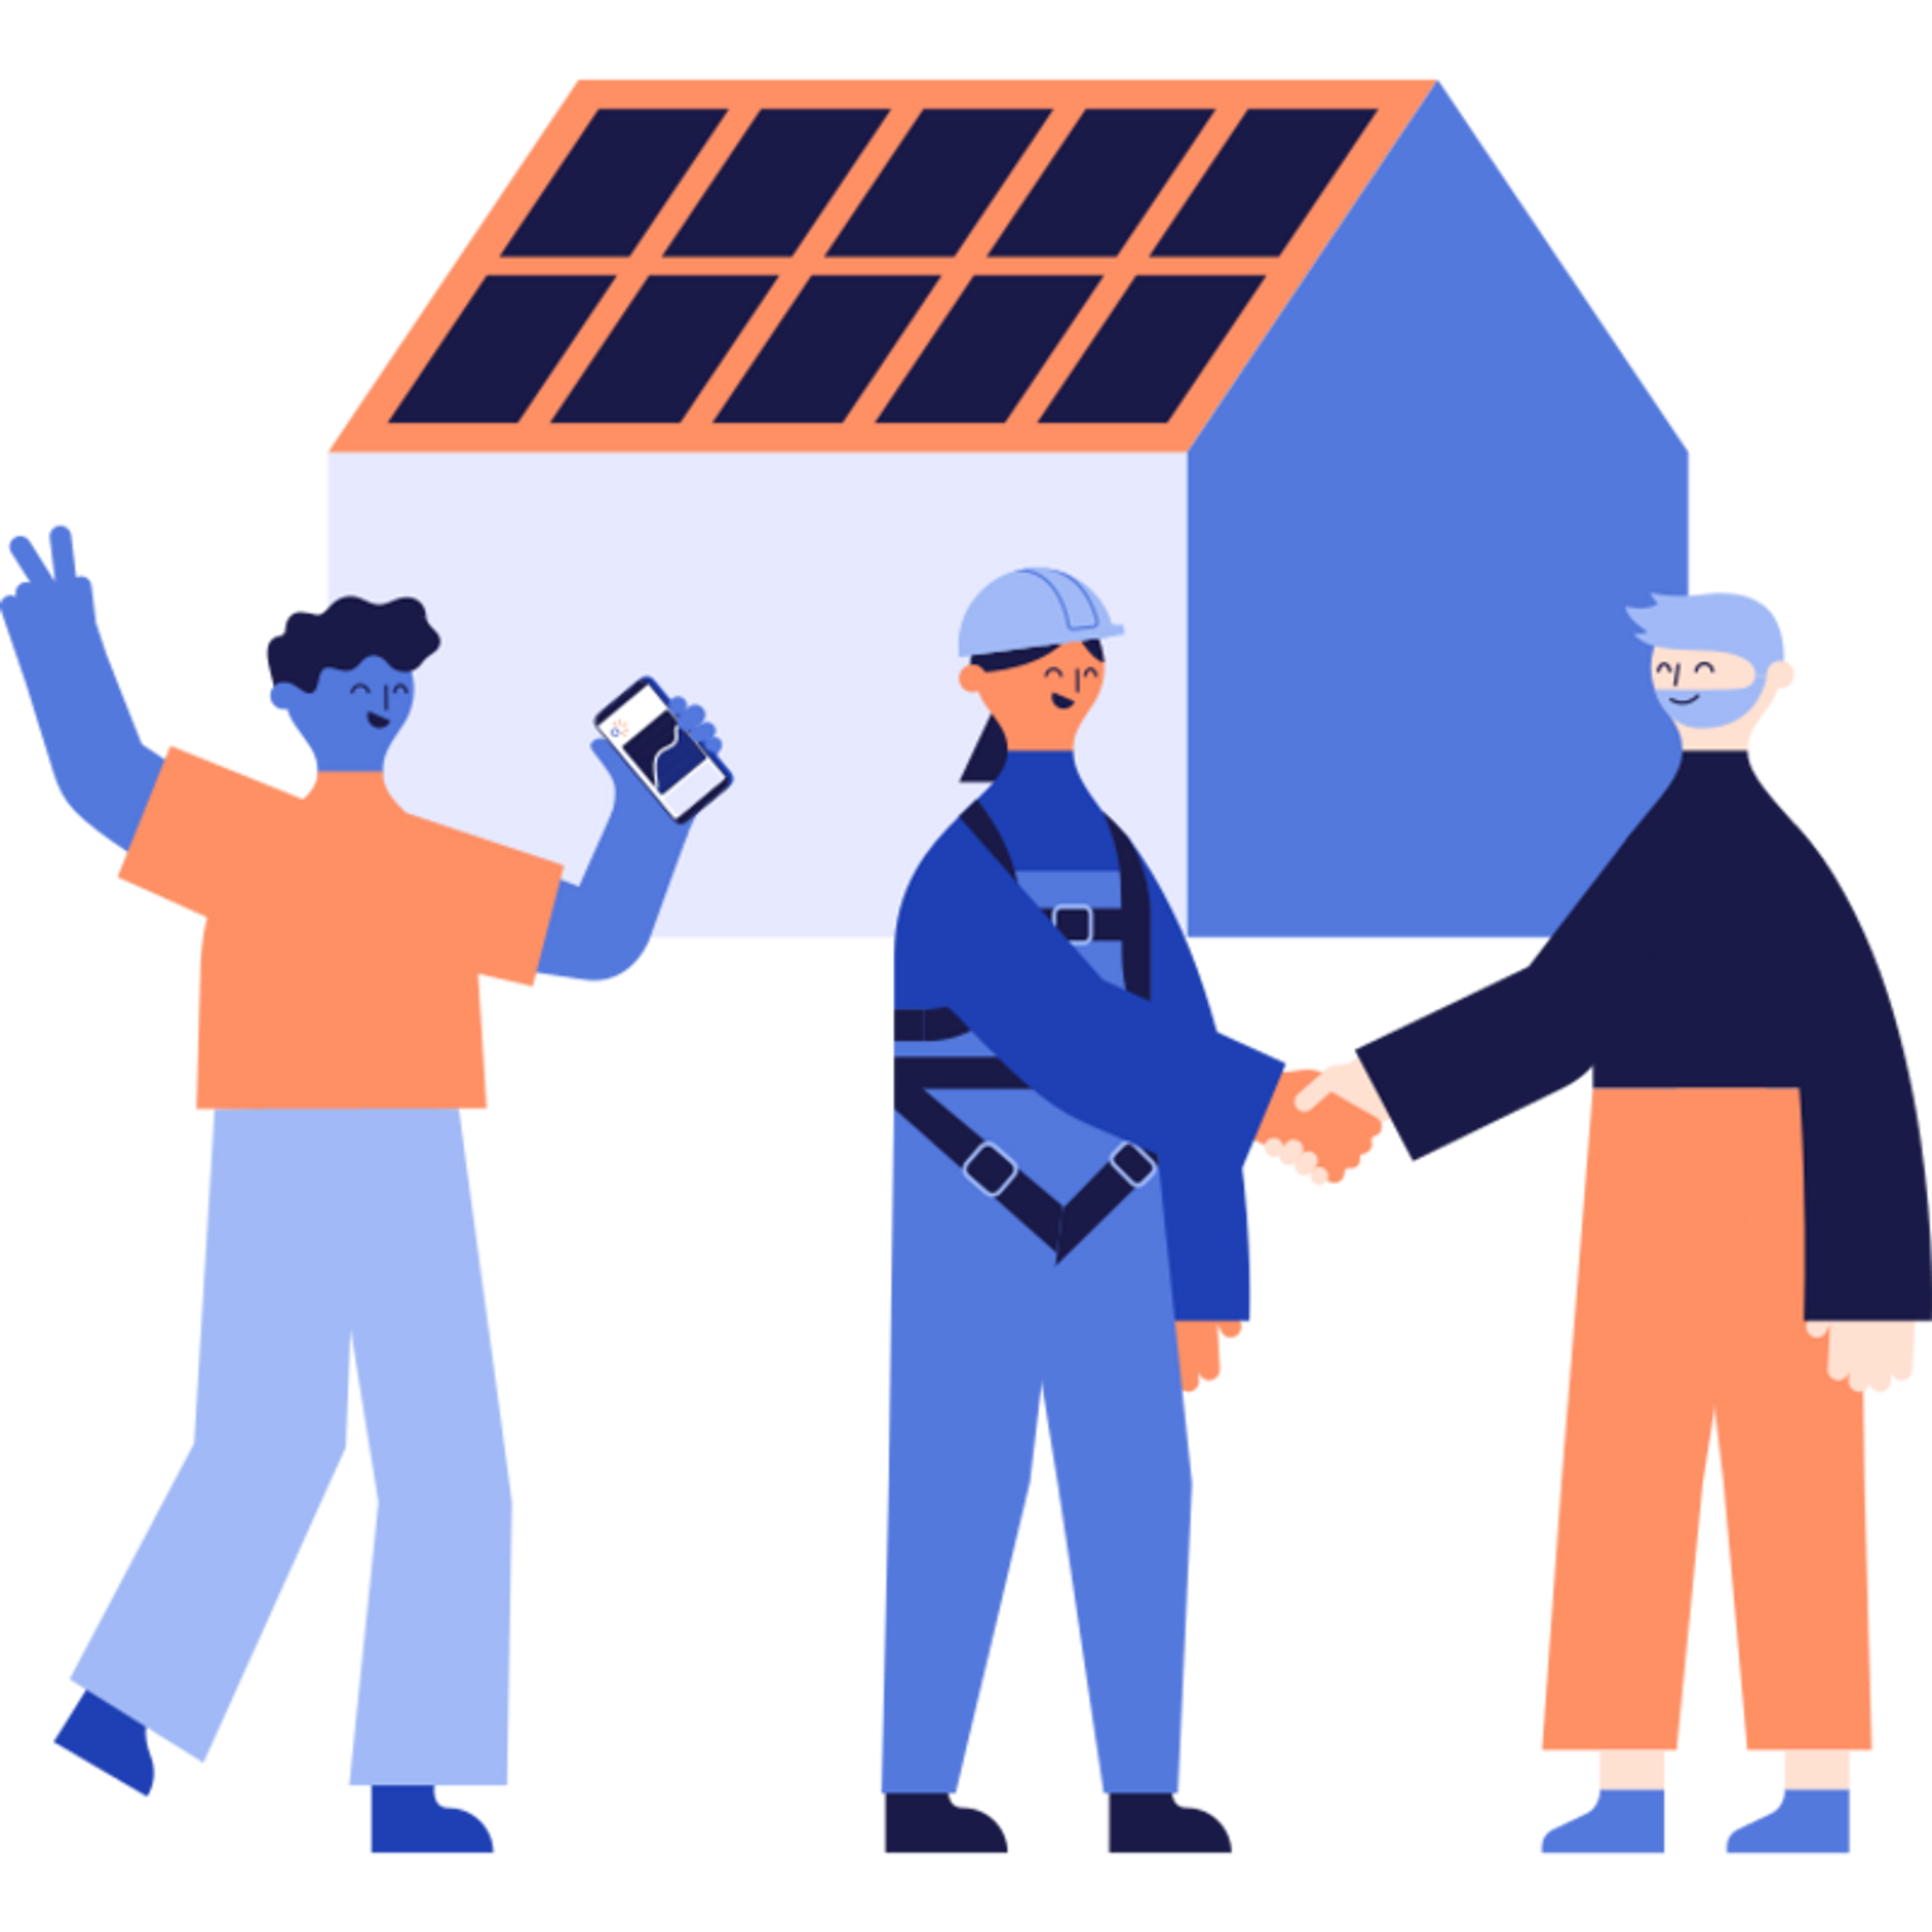 illustration partenariat panneau solaire